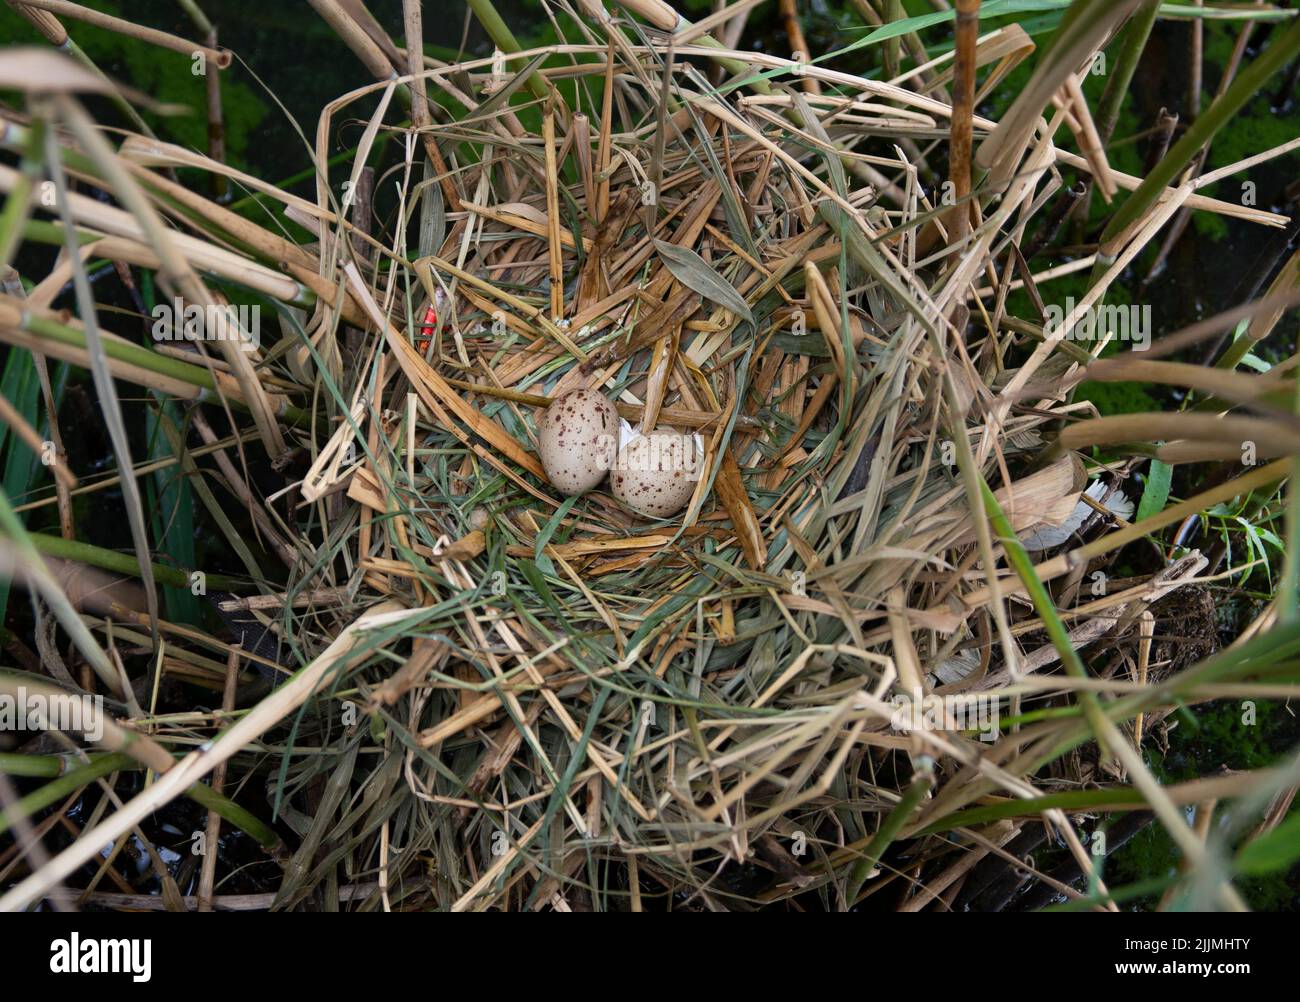 Nido y huevos de Moorhen, también conocido como Moorhen común, Gallinula chloropus, Brent Reservoir, Londres, Reino Unido, Islas Británicas Foto de stock